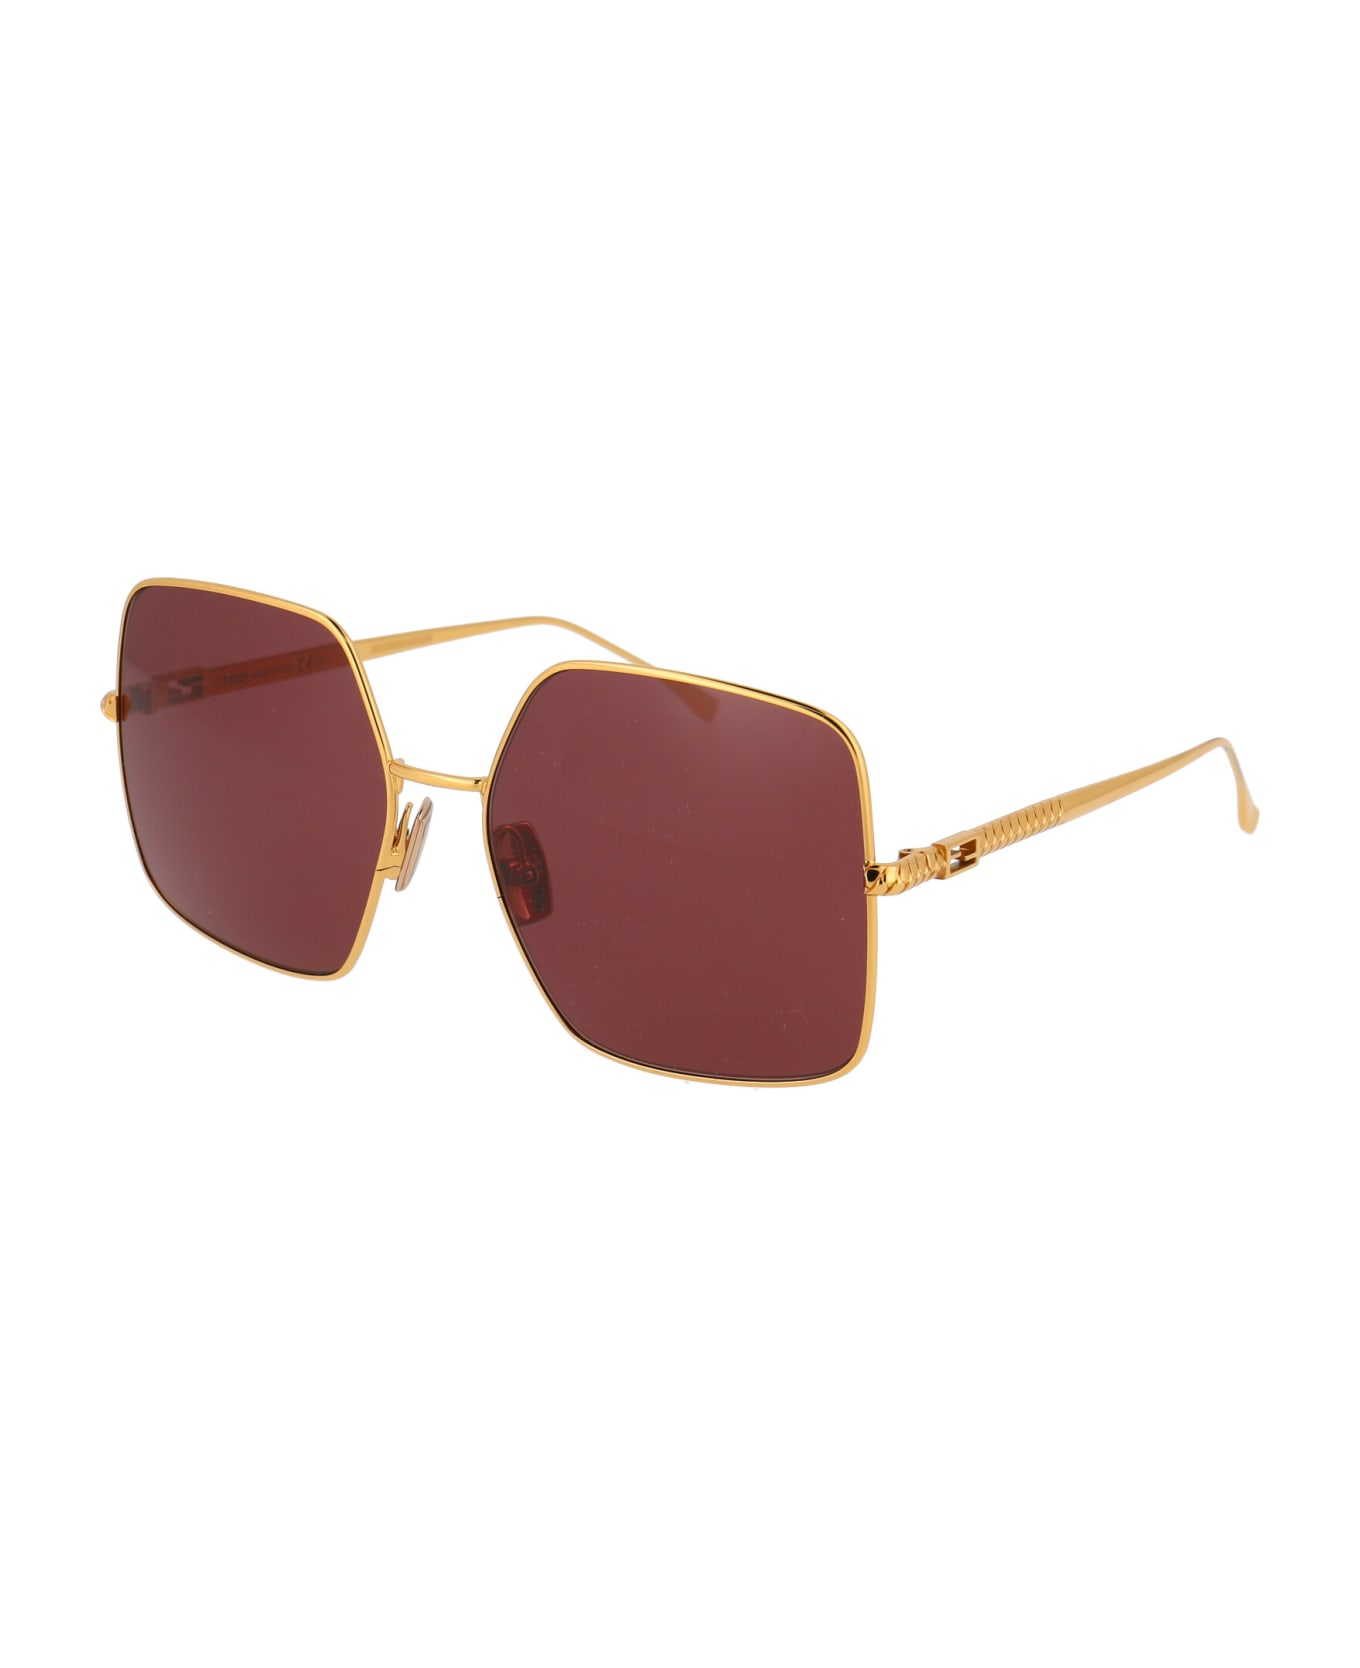 Fendi Eyewear Ff 0439/s Sunglasses - 001U1 YELLOW GOLD